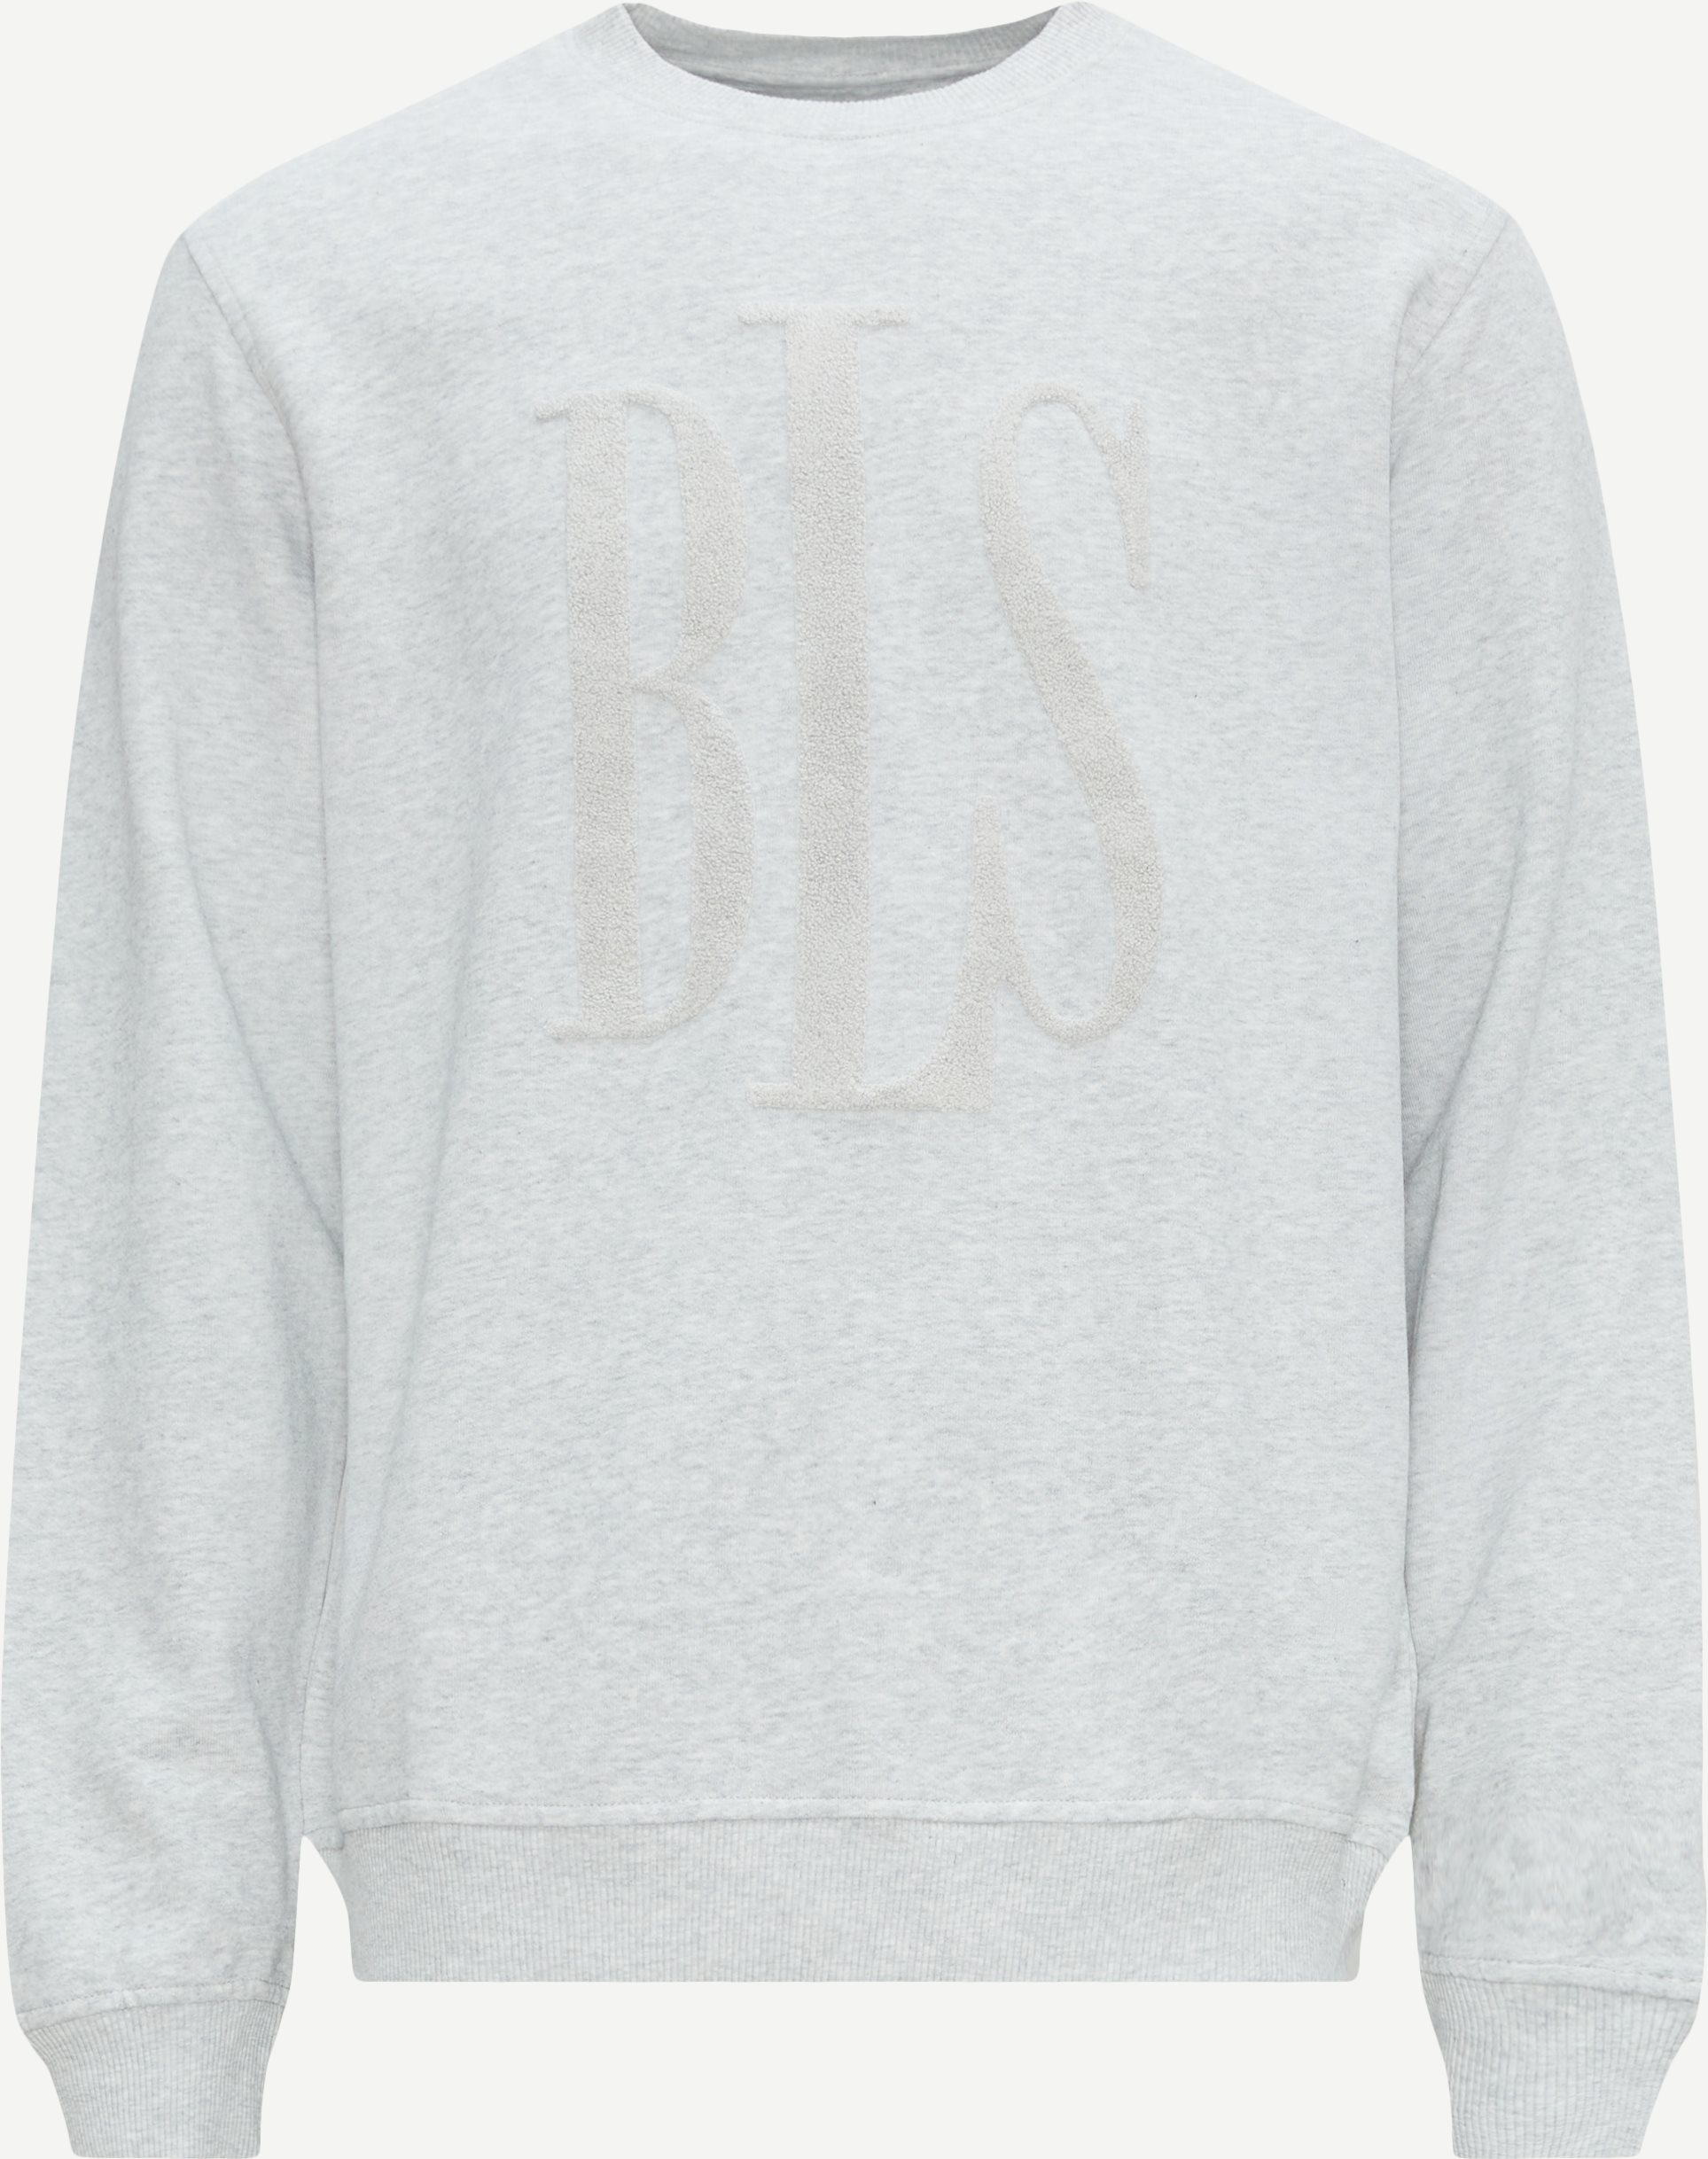 BLS Sweatshirts CLASSIC TONAL LOGO CREWNECK 202308047 Grey